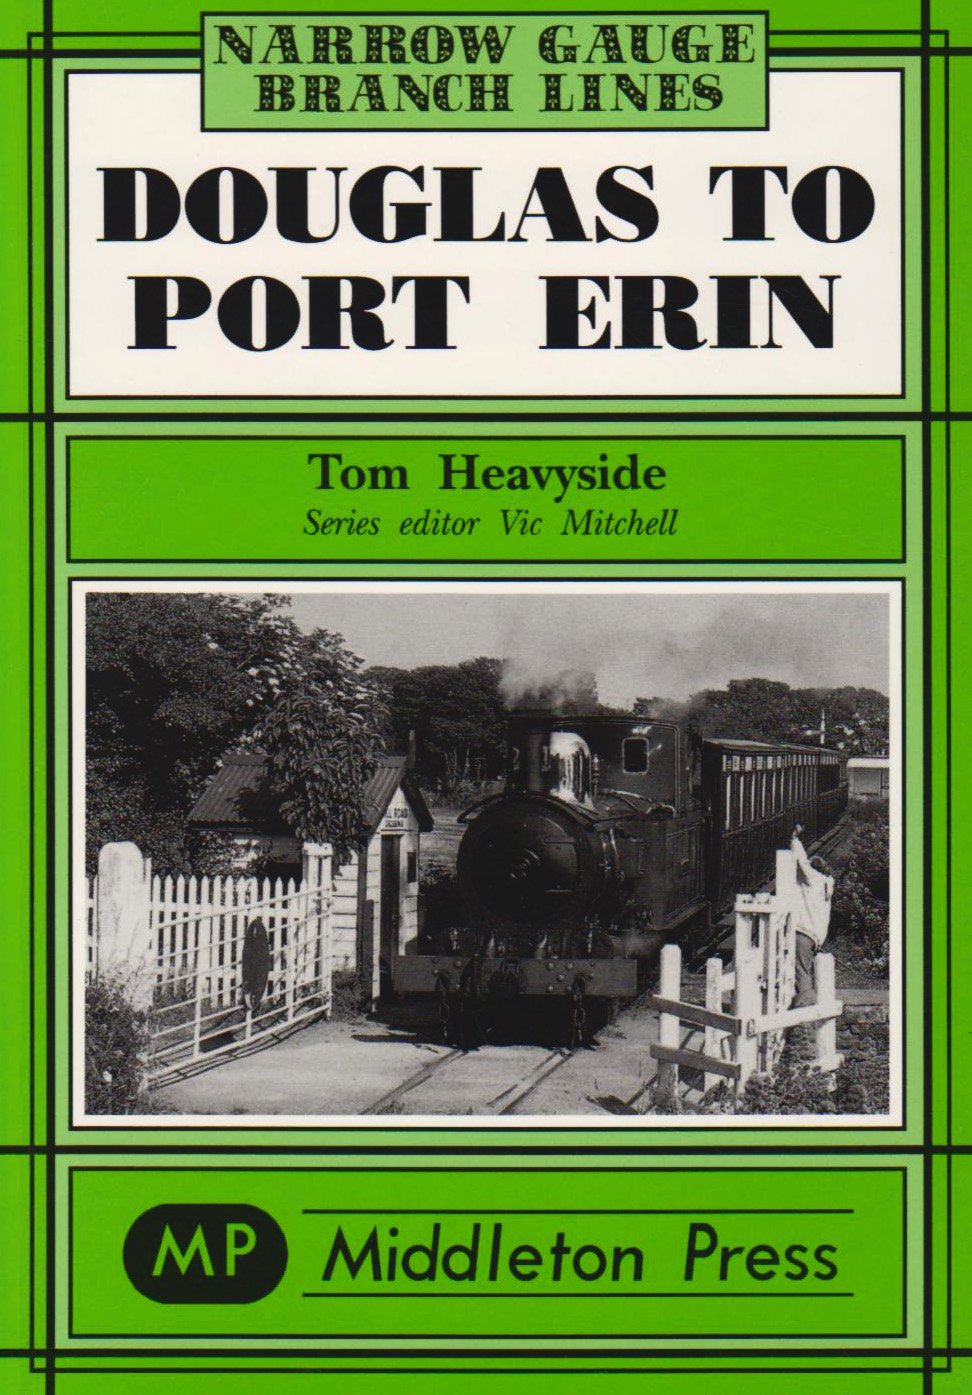 Narrow Gauge Douglas to Port Erin